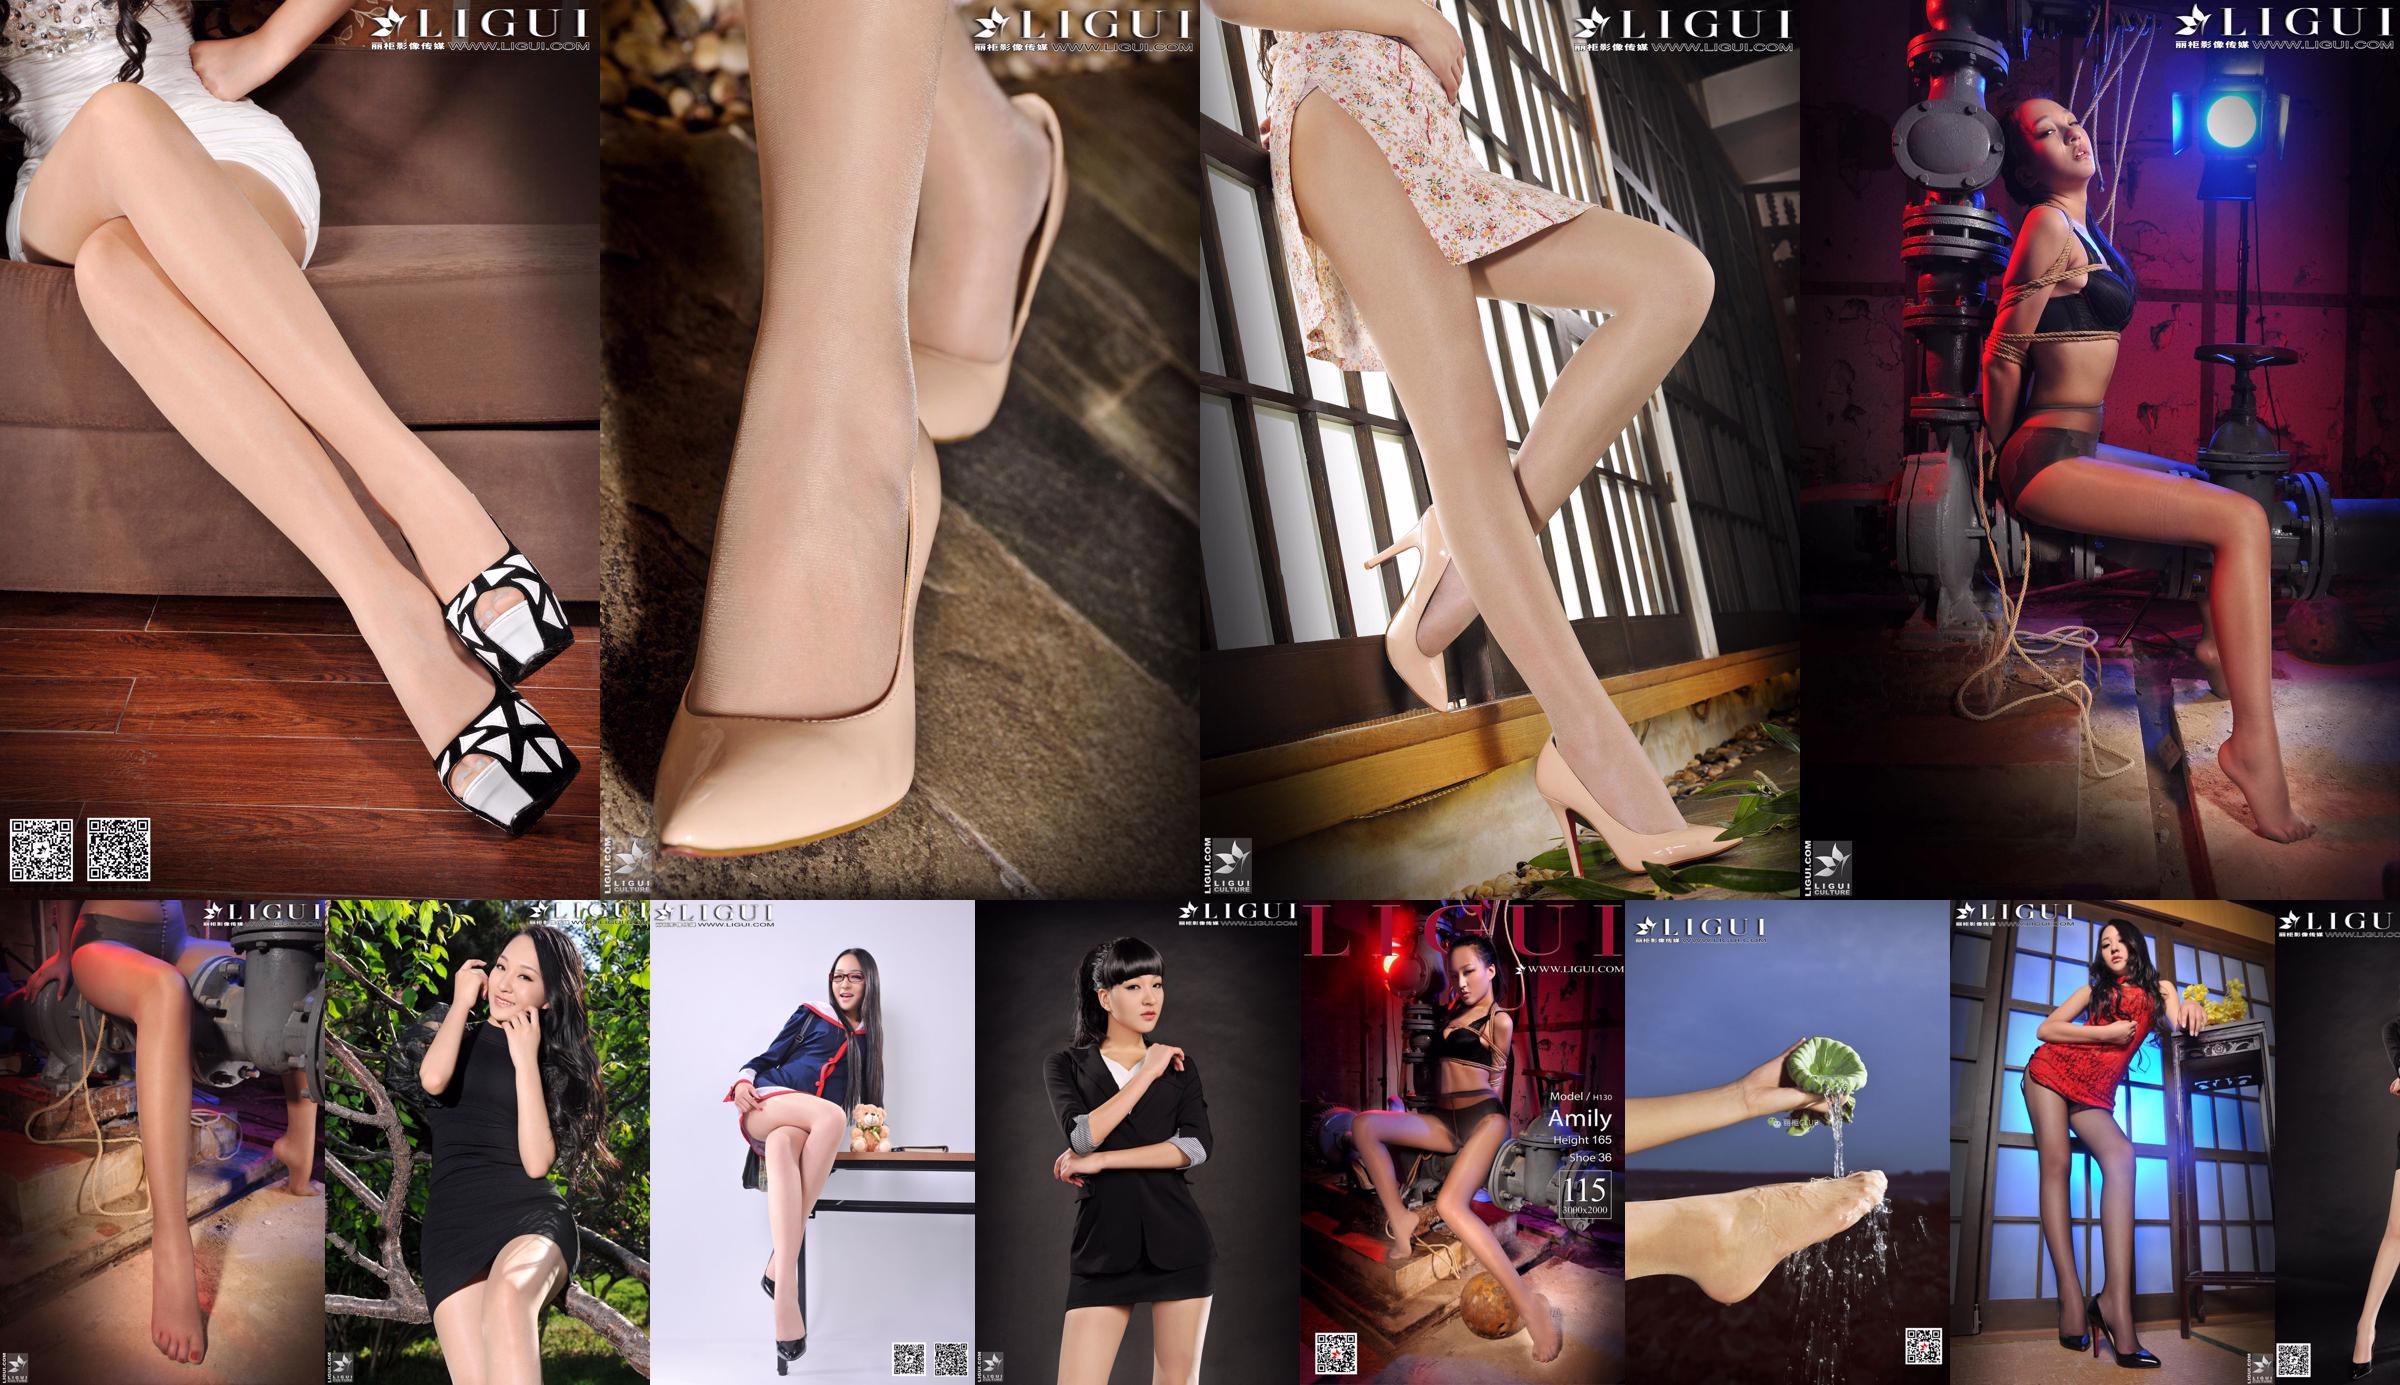 Modello Amily "Gambe lunghe Calze di carne tacco alto OL Beauty" [丽 柜 LiGui] Belle gambe e piede di giada No.2770f5 Pagina 1